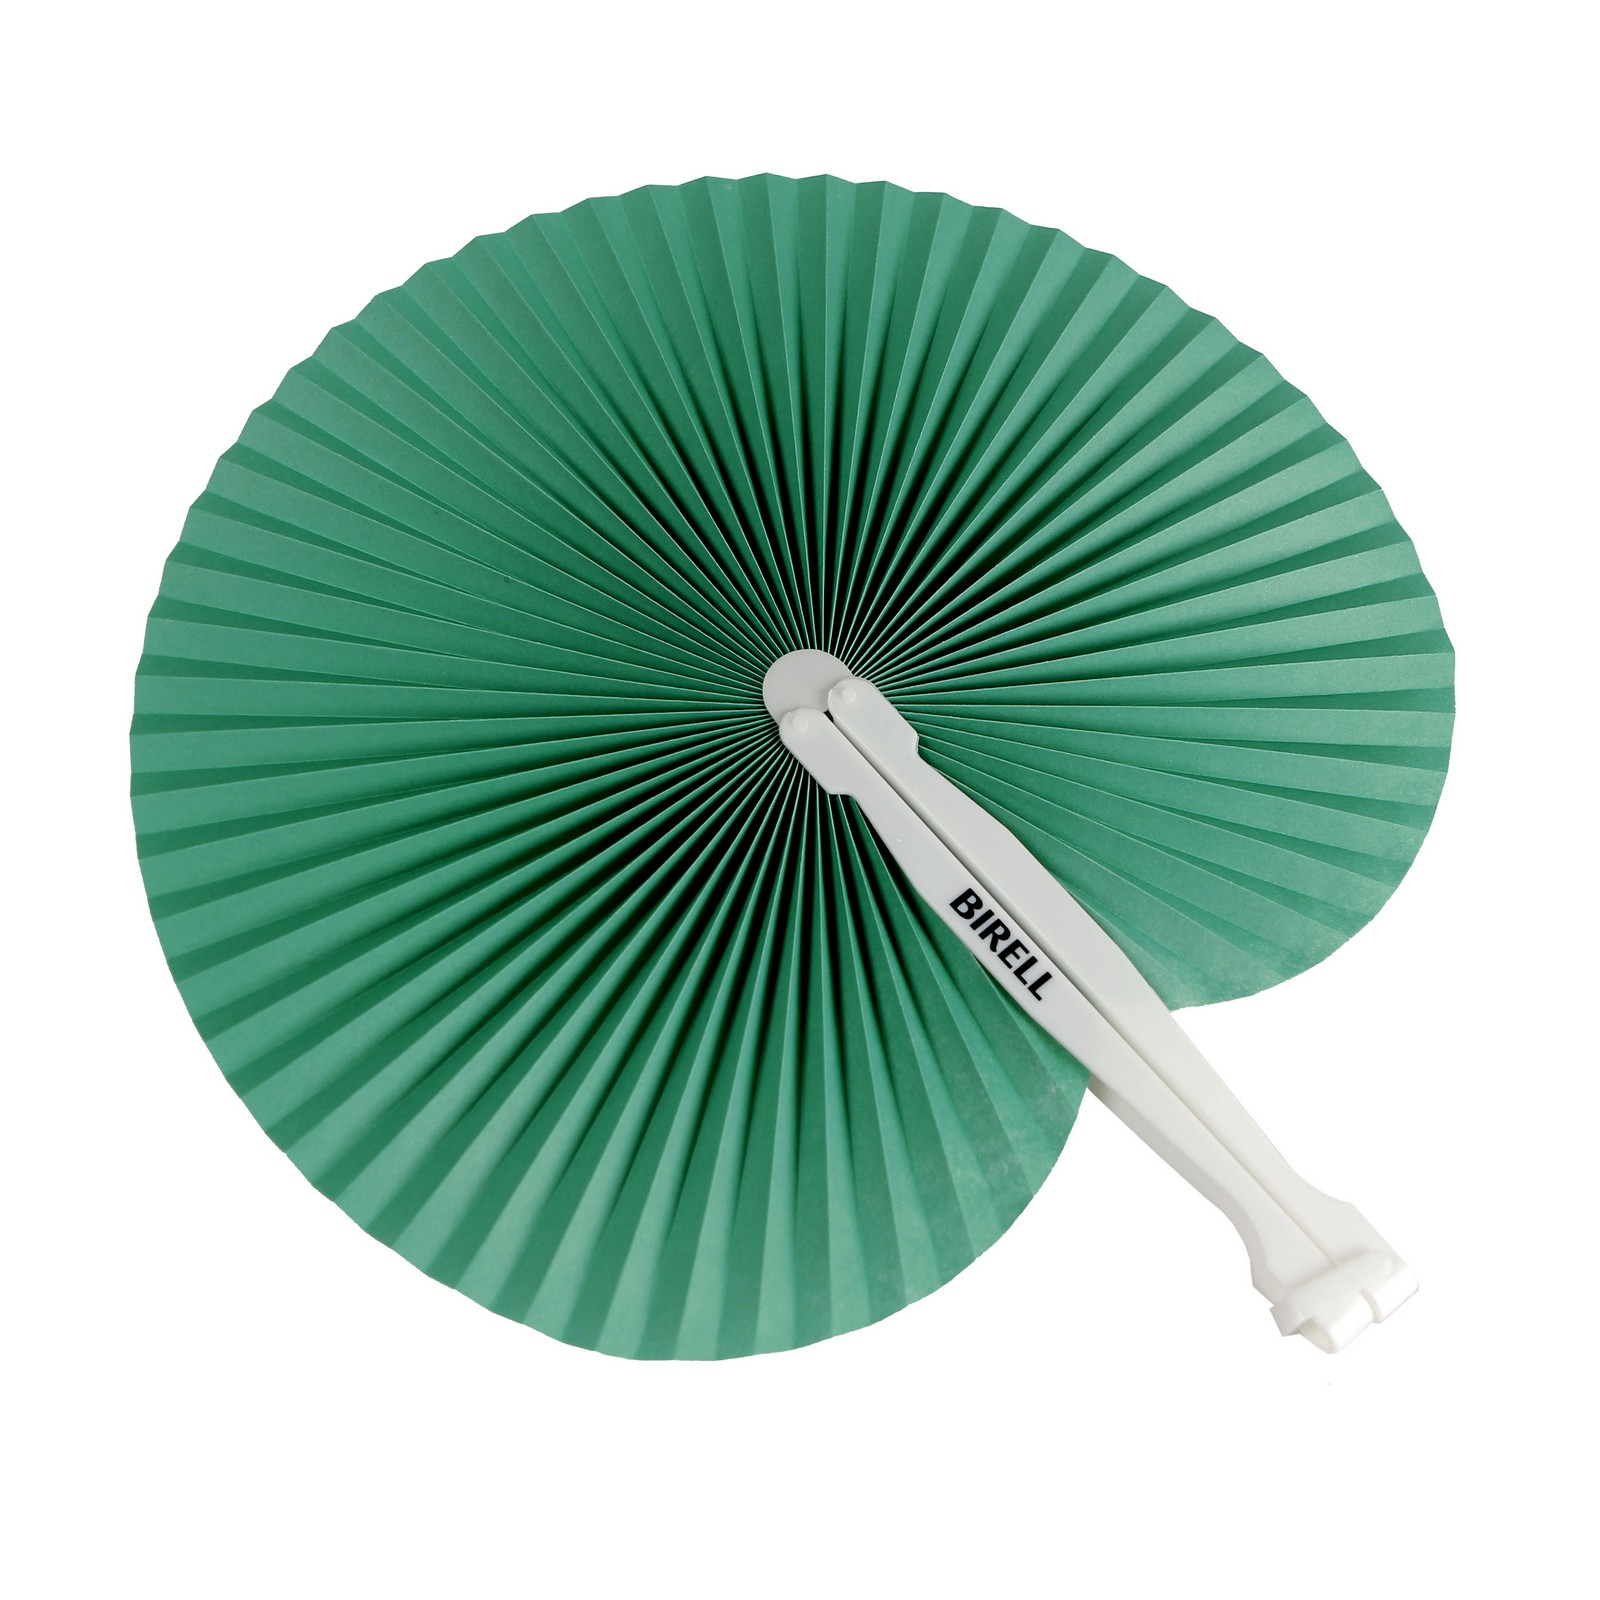 Birell Fan, Green